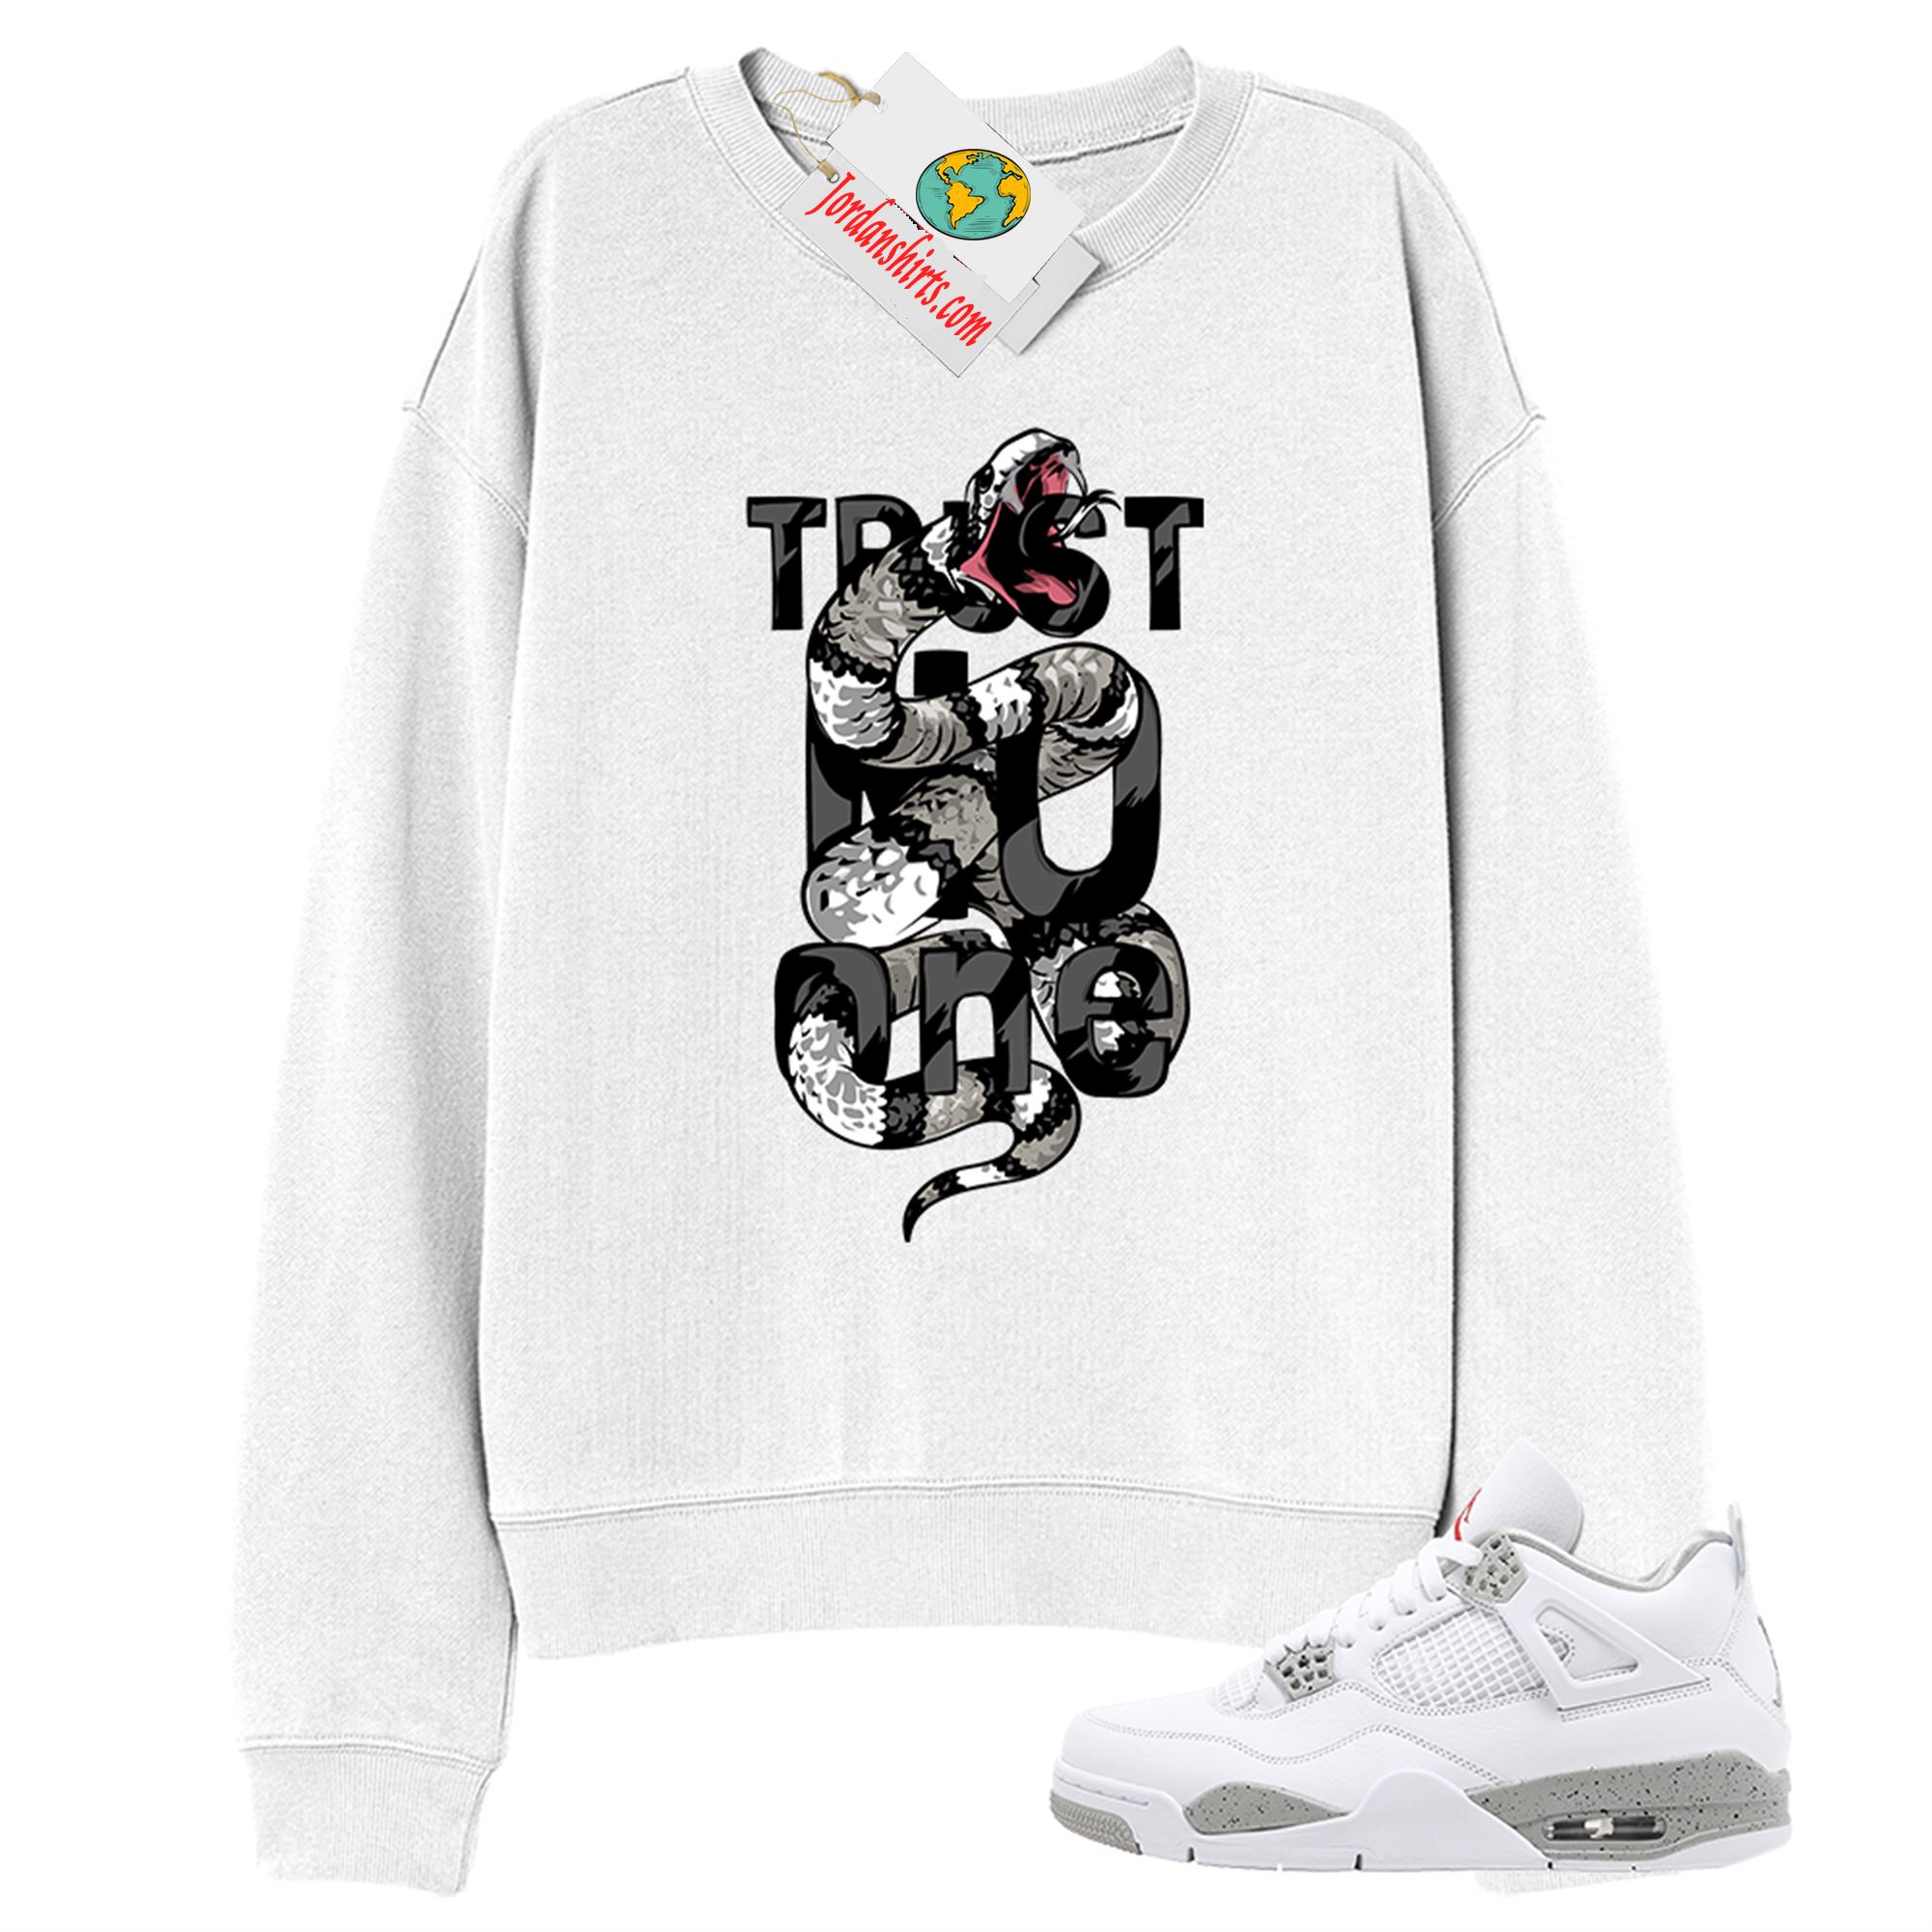 Jordan 4 Sweatshirt, Trust No One King Snake White Sweatshirt Air Jordan 4 White Oreo 4s Size Up To 5xl